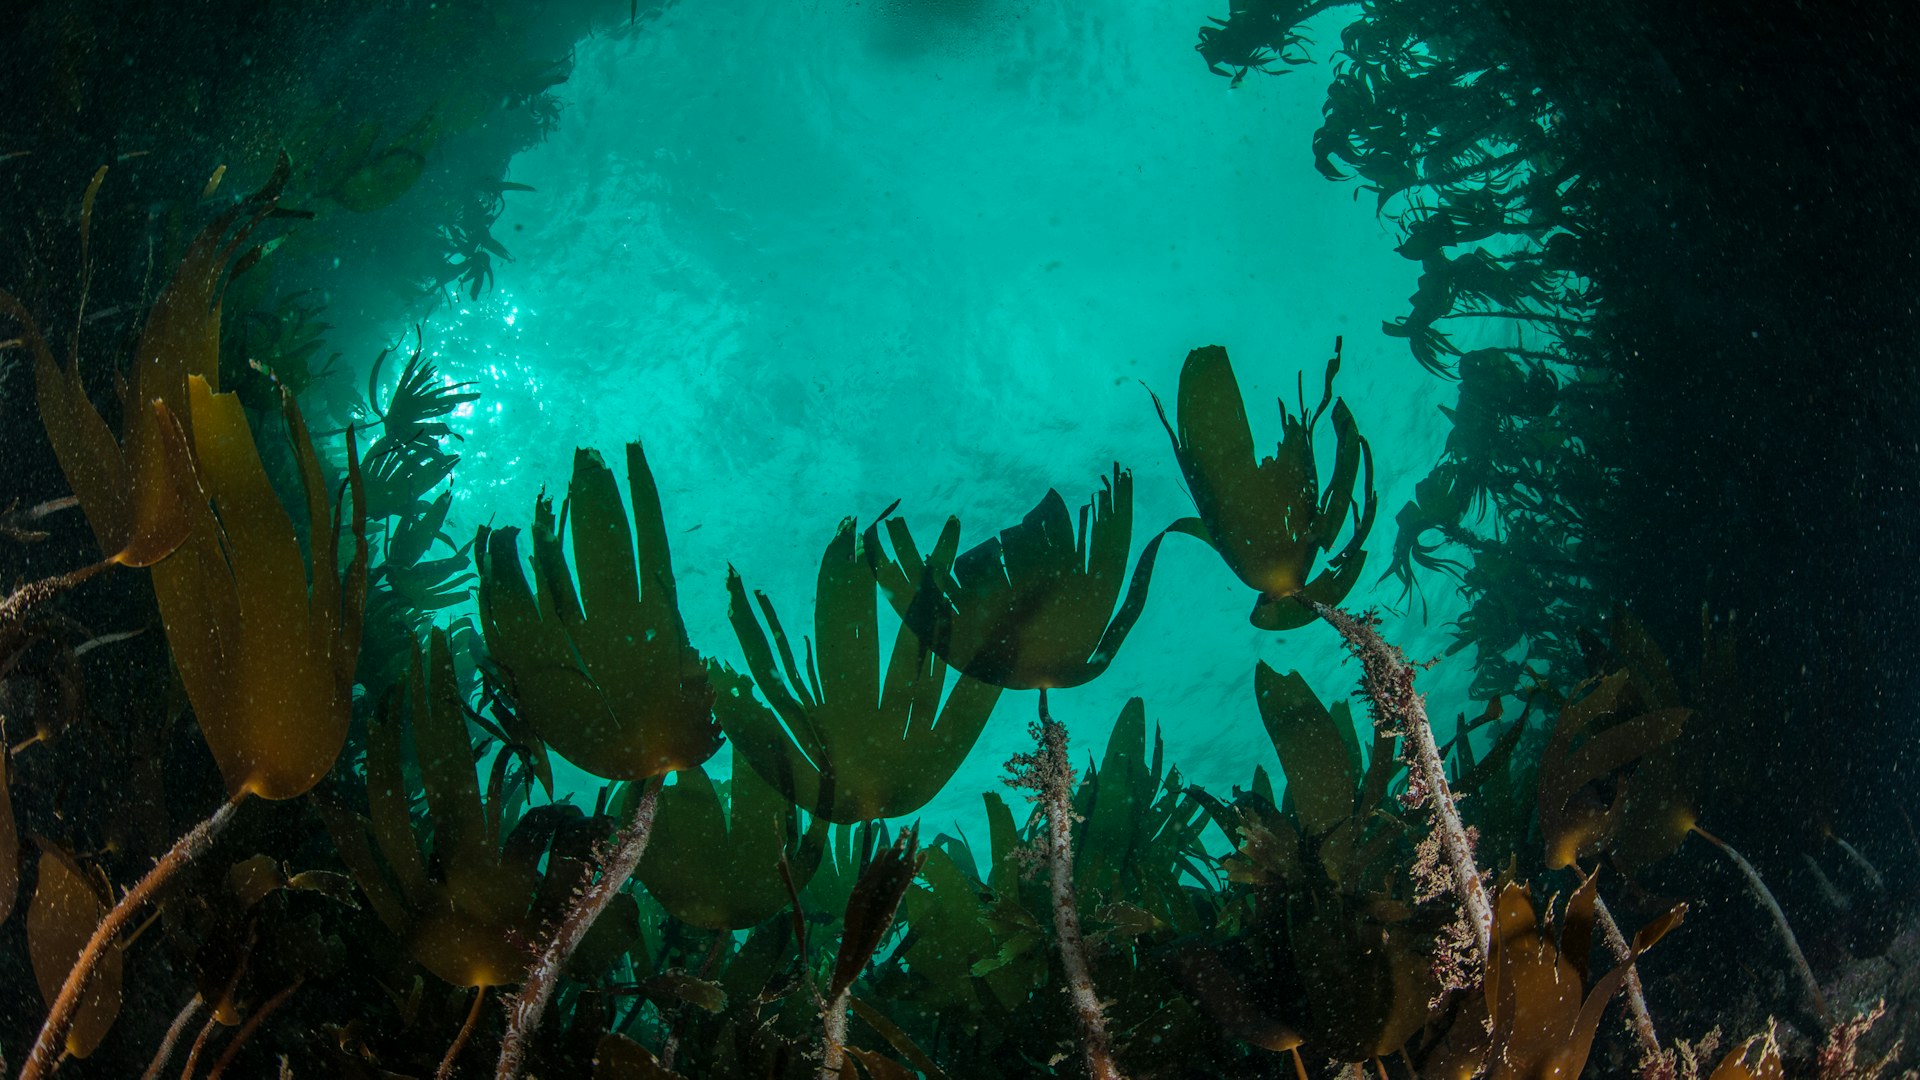 Underwater kelp forest, Scotland